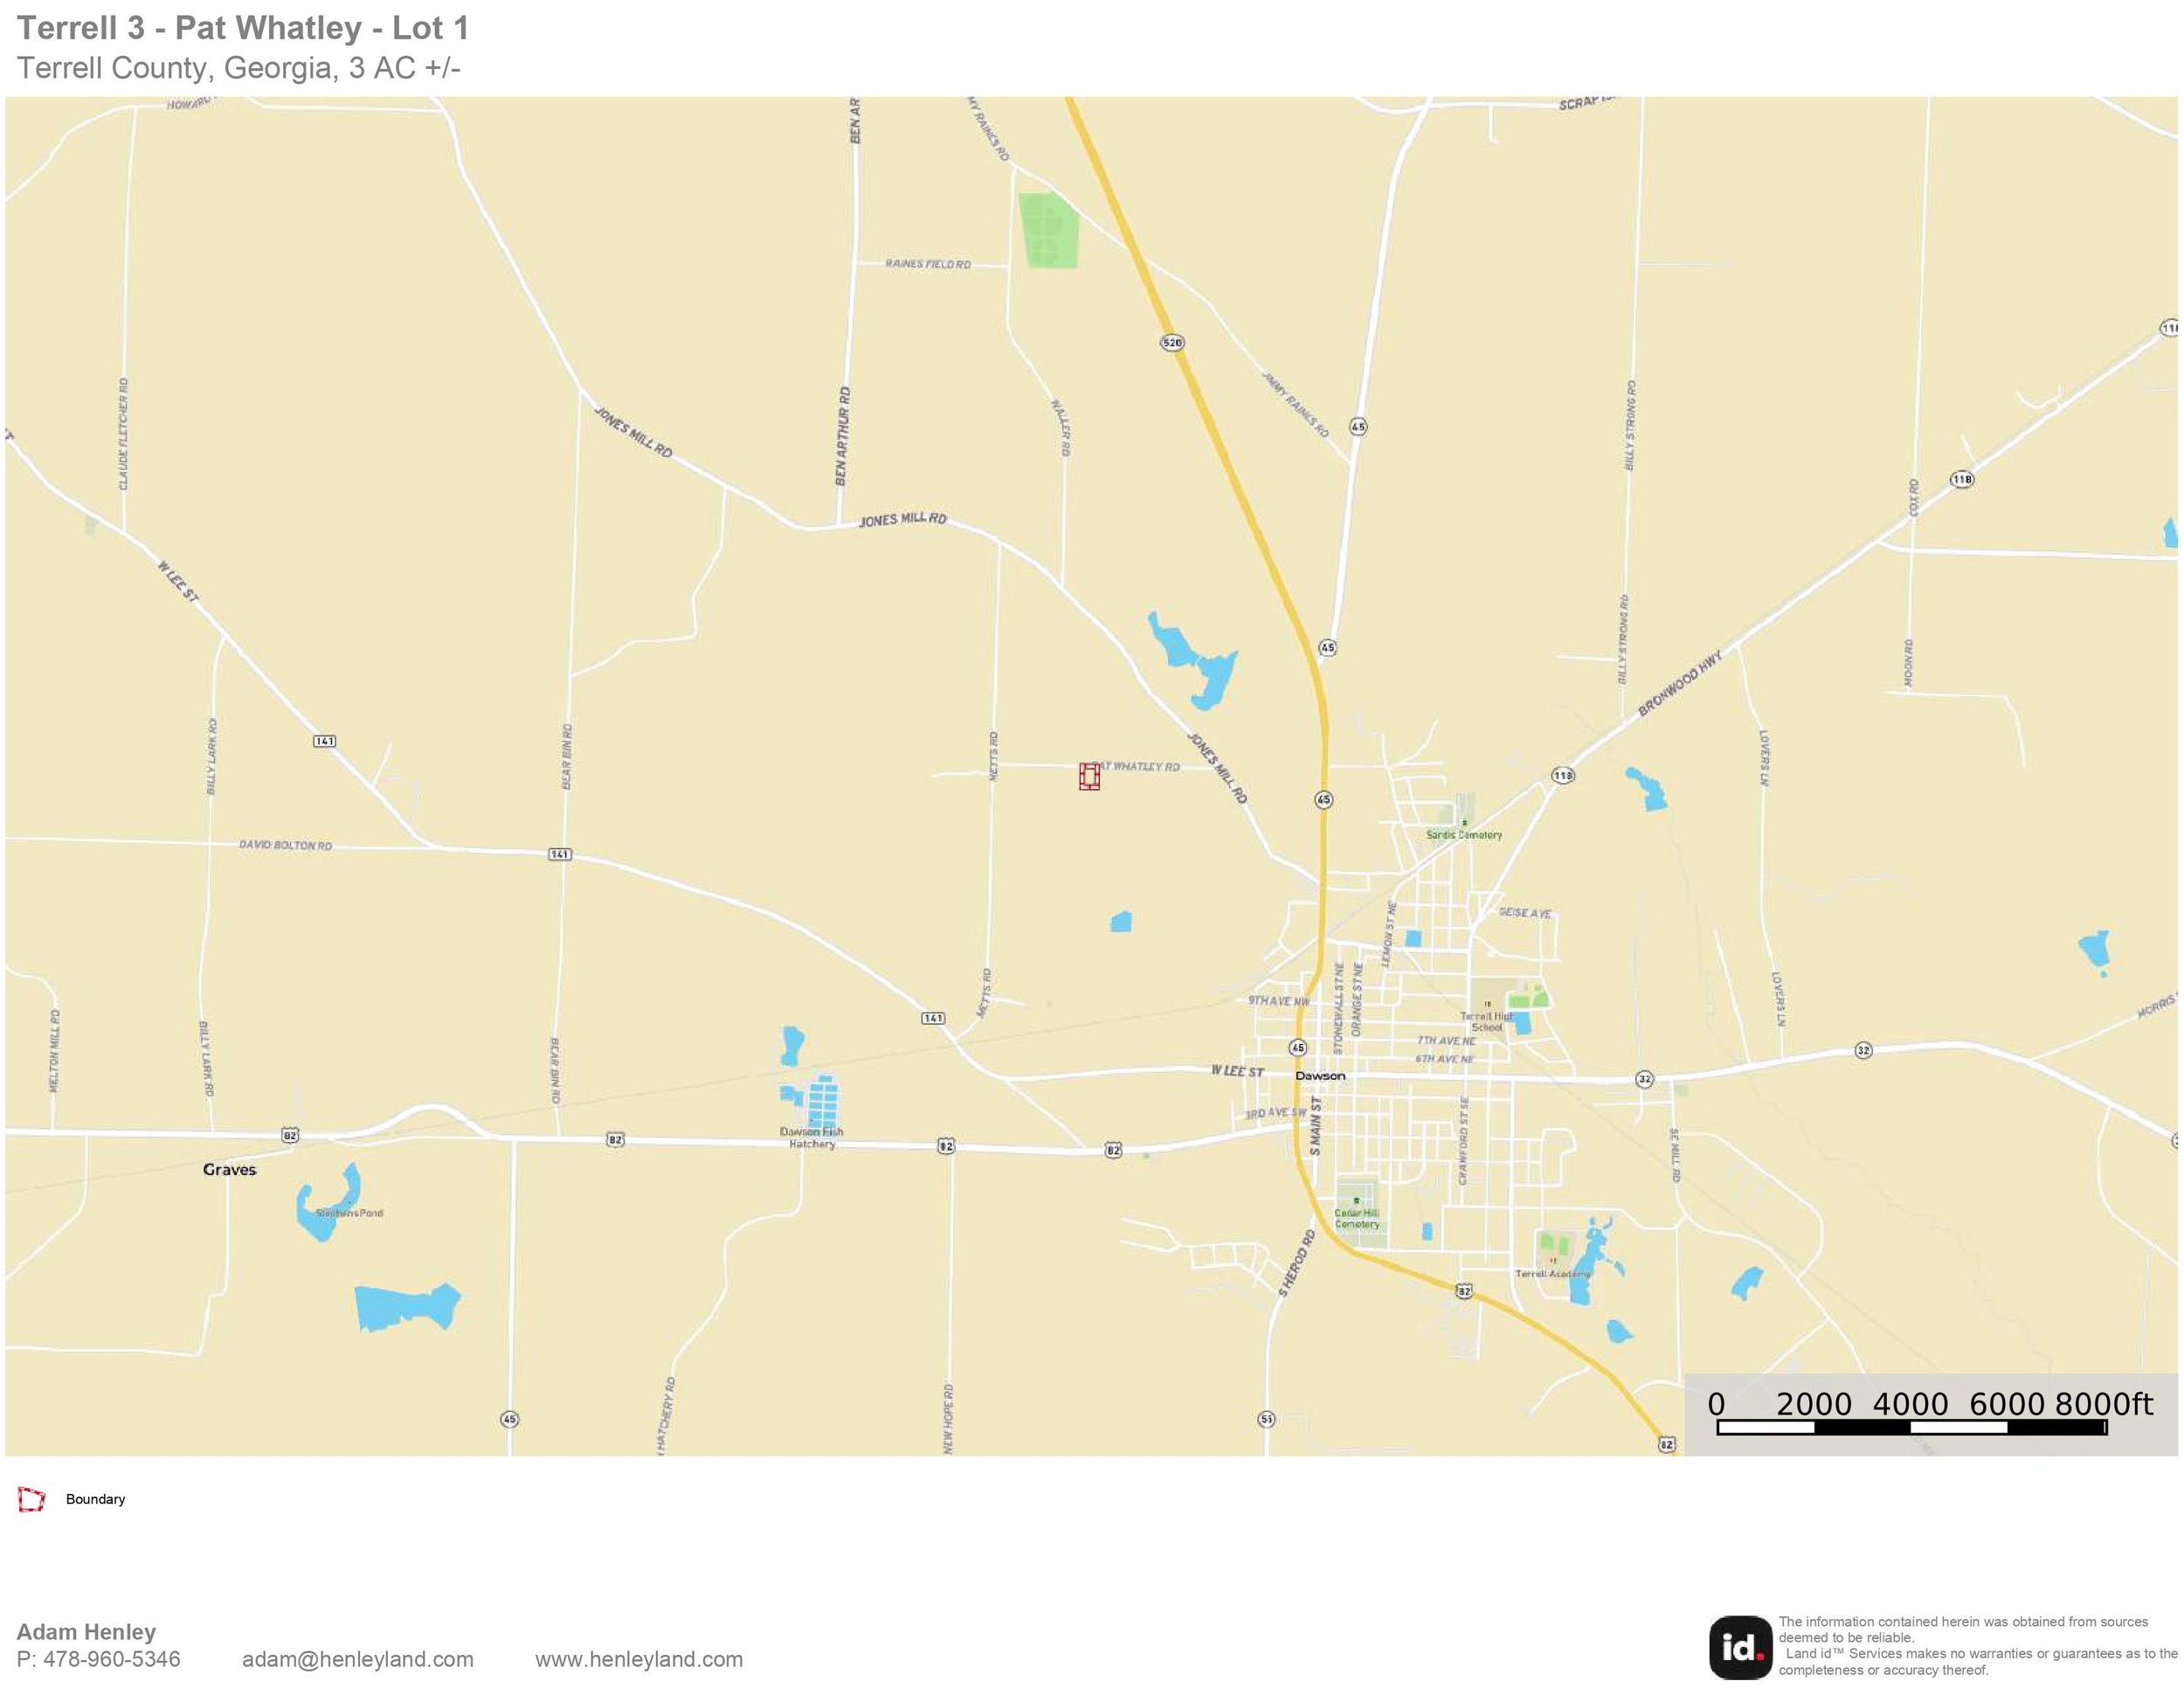 Terrell 3 - Parcel 1 - Location Map.jpg